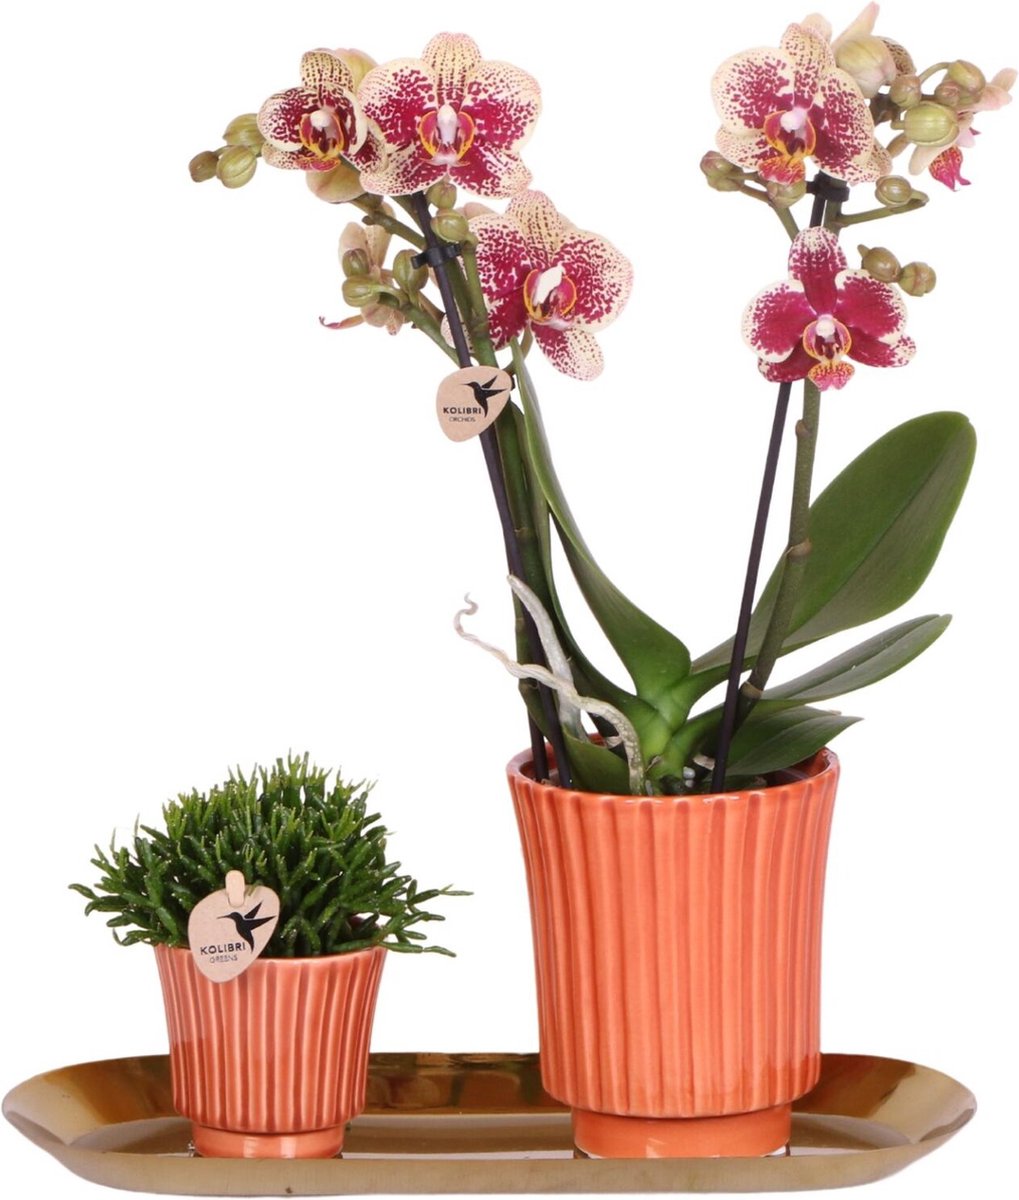 Pots&Plants Groene Planten Met Phalaenopsis Orchidee In Culture Terracotta Sierpotten En Gouden Dienblad